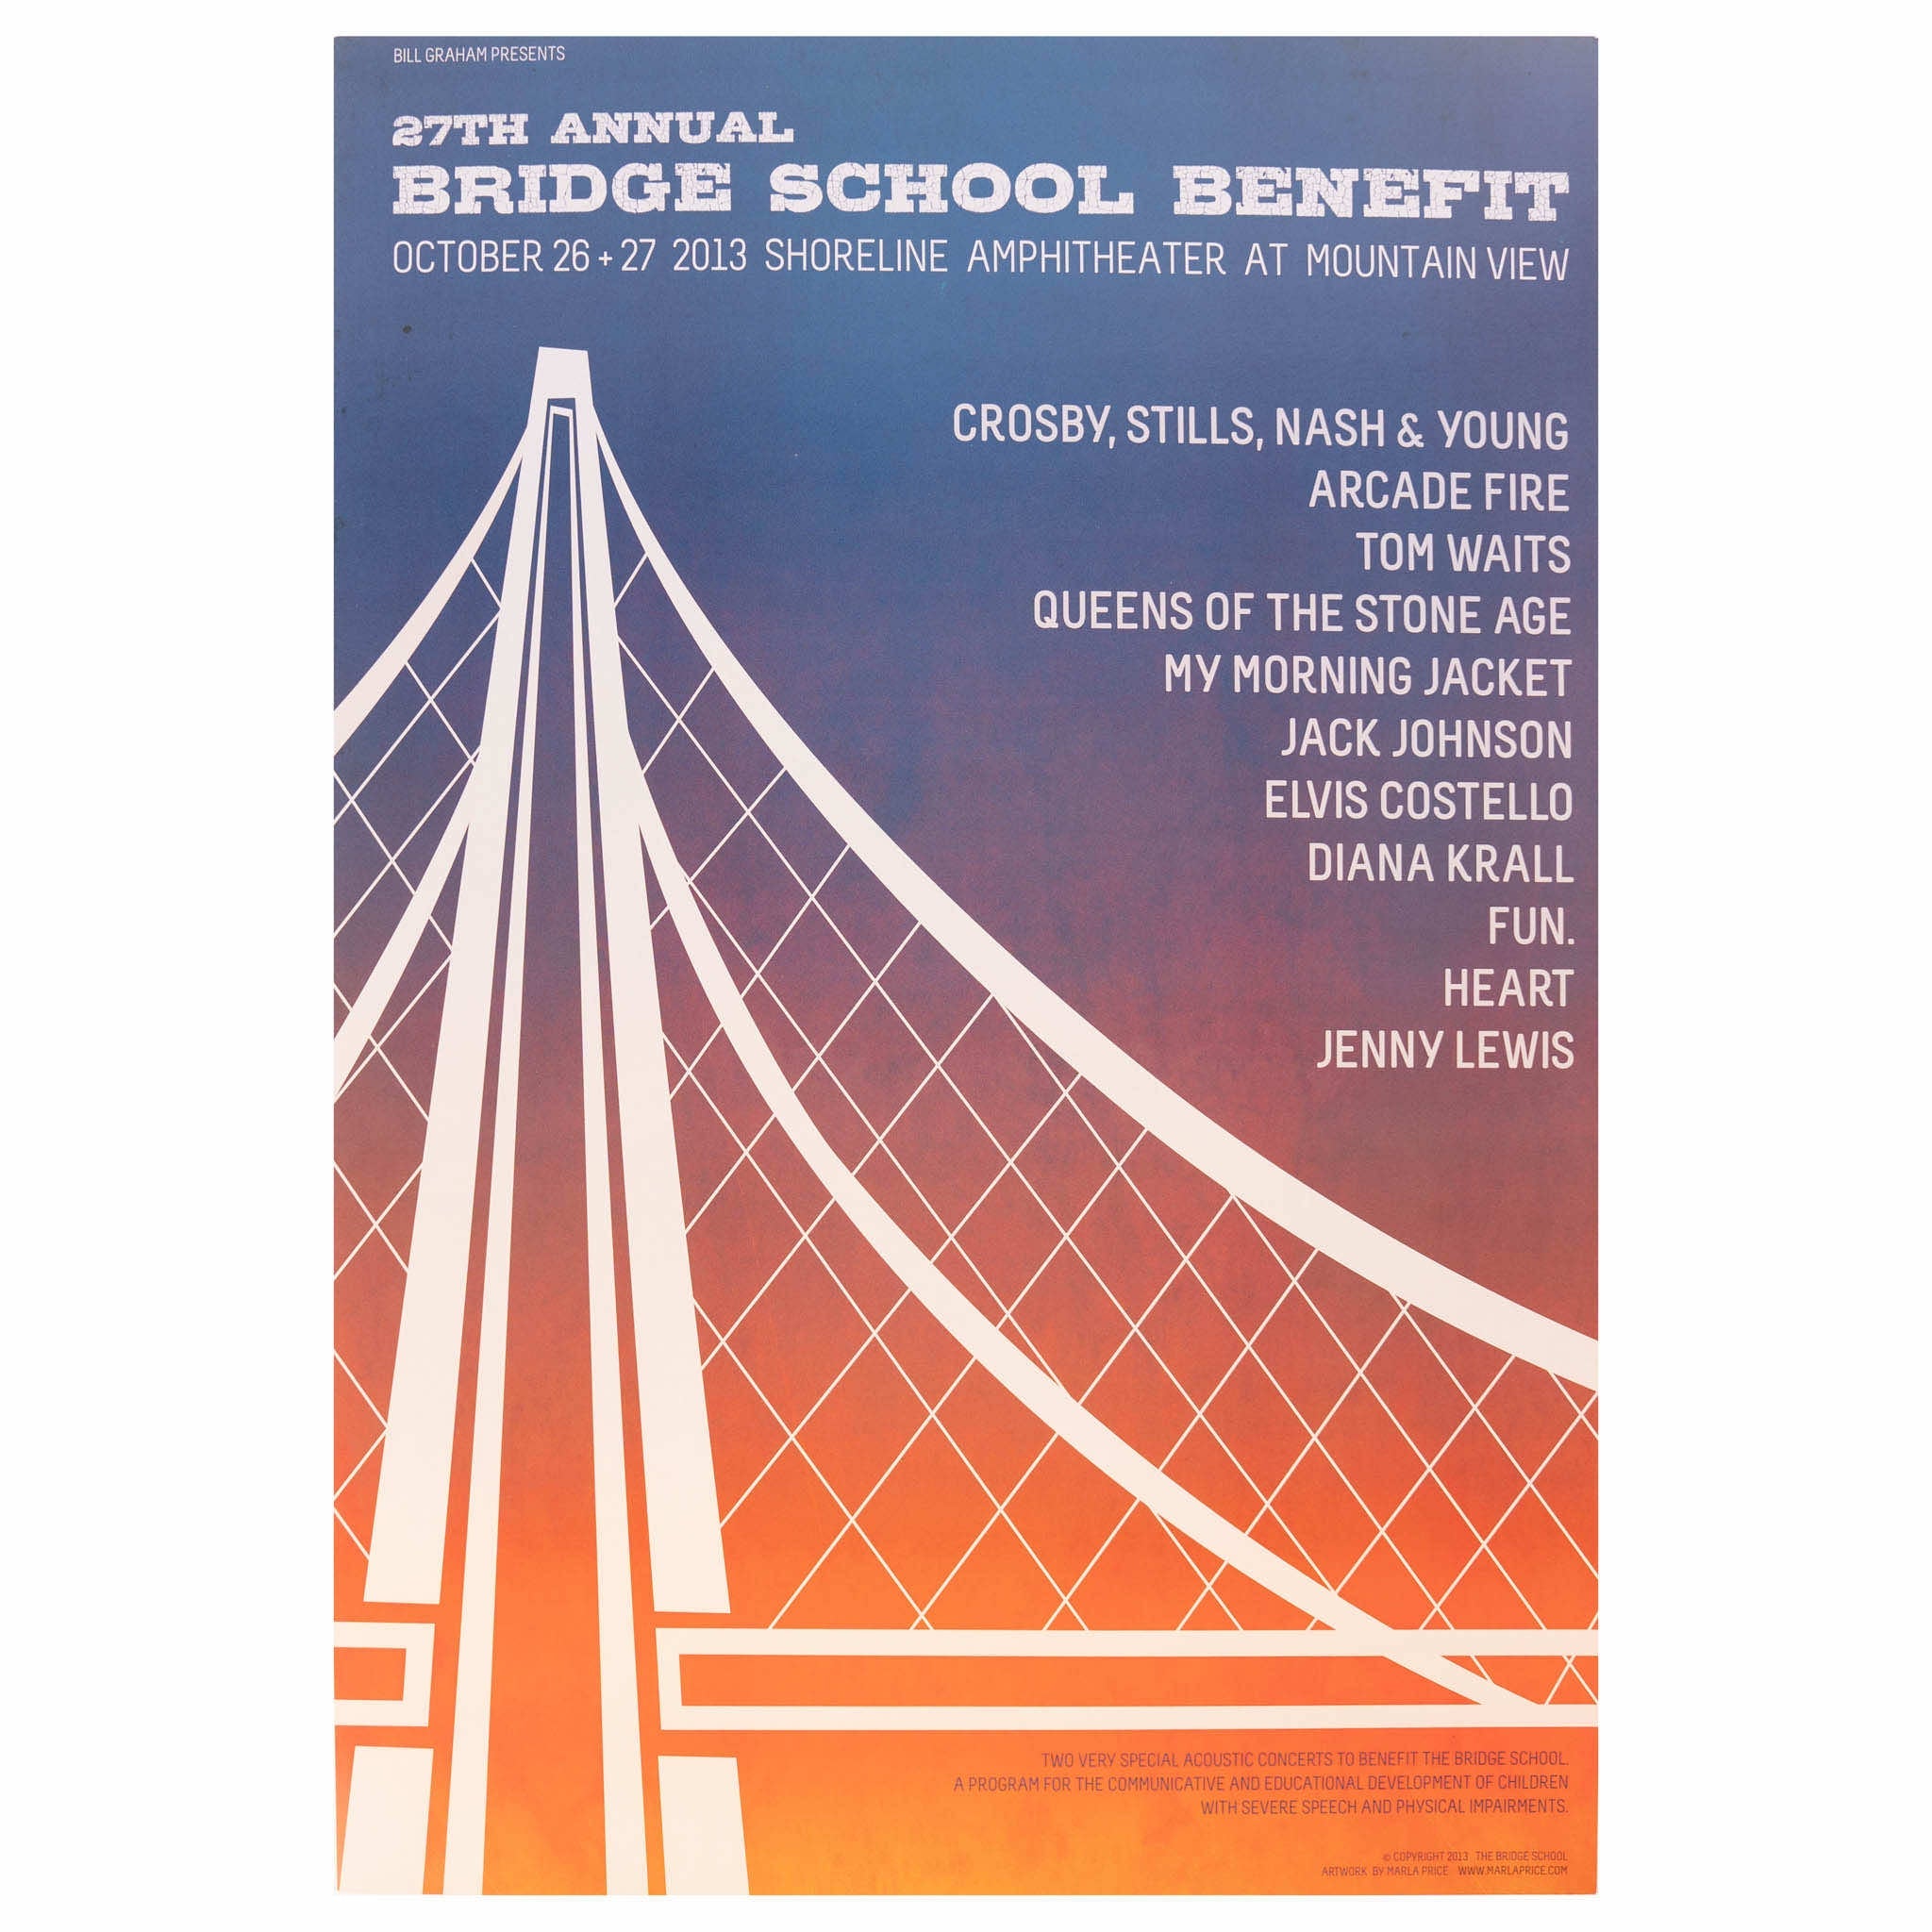 2013 - 27th Bridge School Benefit Concert poster